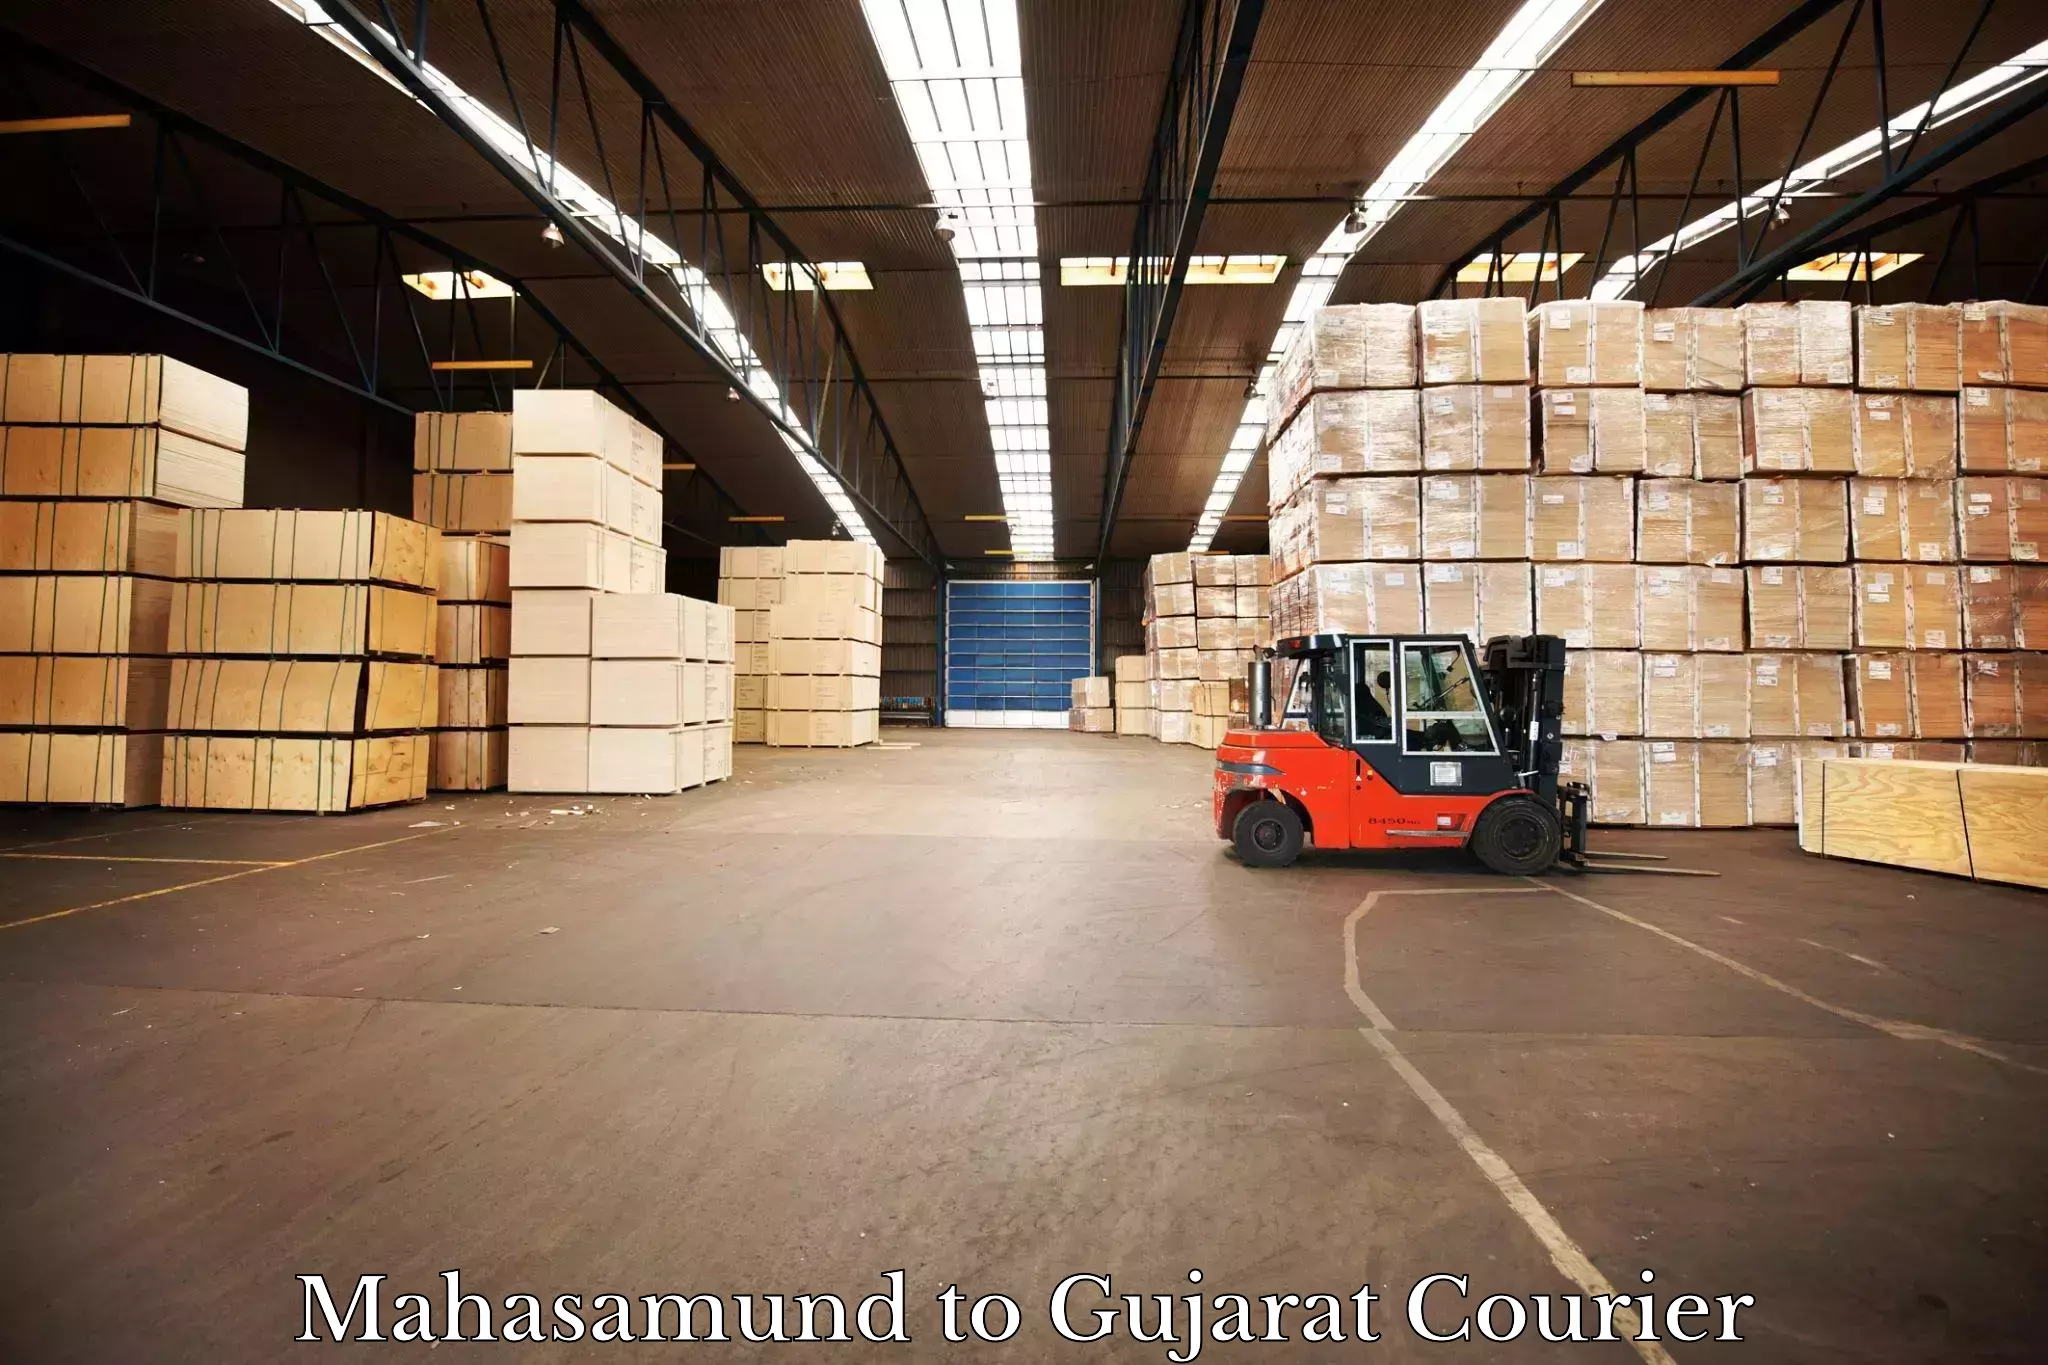 Global shipping networks Mahasamund to Kalavad